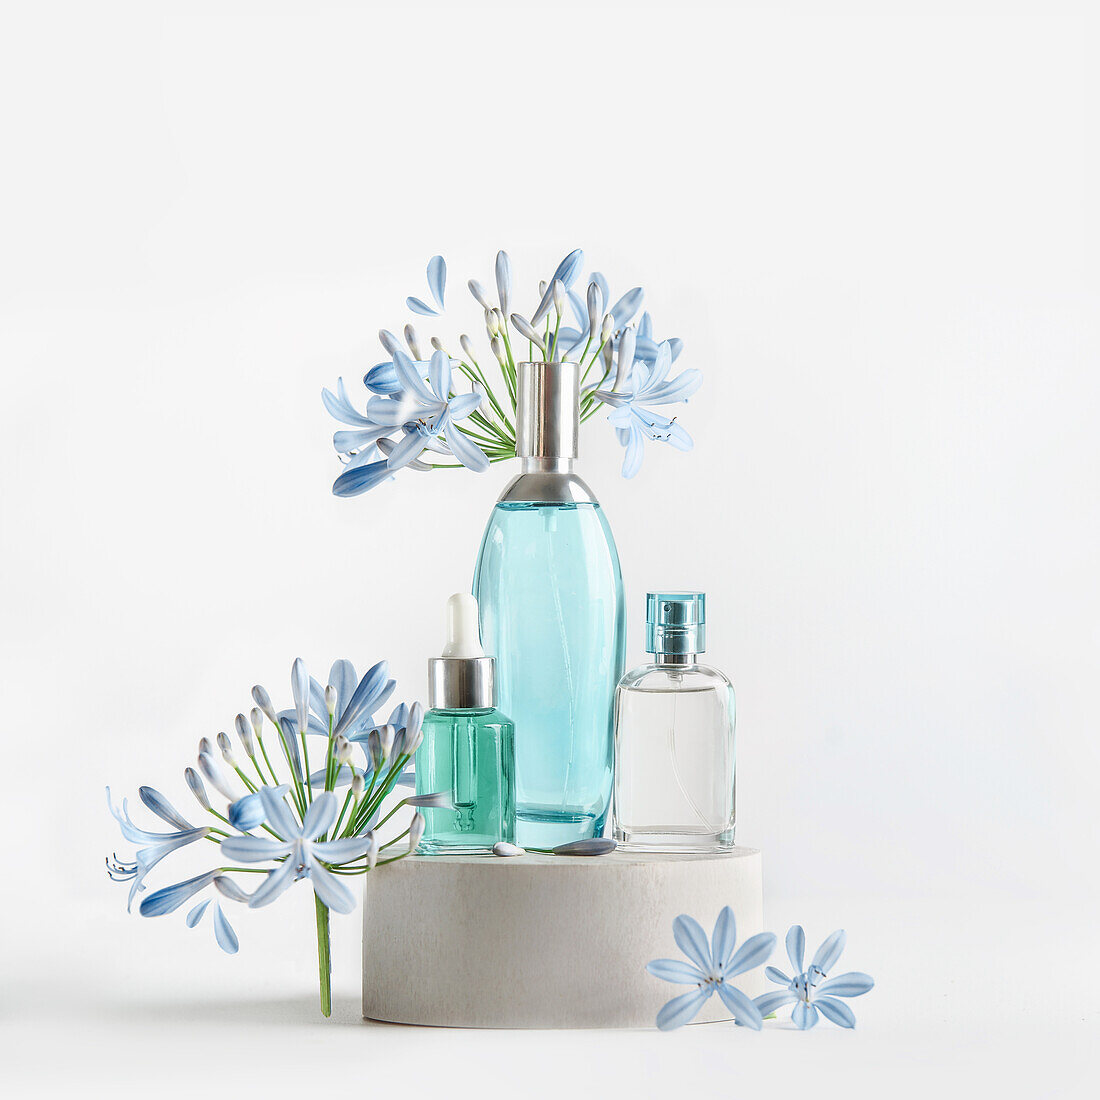 Schönheitsprodukte in blauen Glassprüh- und Pipettenflaschen stehen auf einem Podest mit Blumen und Blütenblättern vor weißem Hintergrund. Kosmetisches Setting mit Serum, Parfüm, Duft und Toner. Vorderansicht